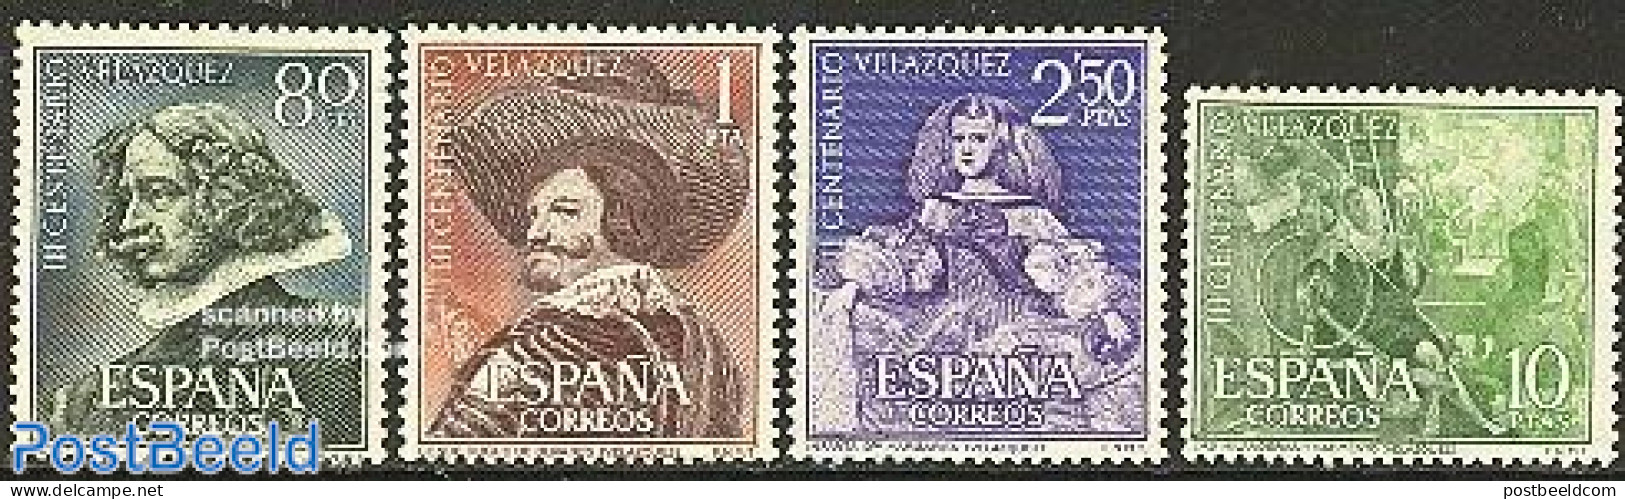 Spain 1961 Velasquez 4v, Unused (hinged), Various - Textiles - Art - Paintings - Unused Stamps